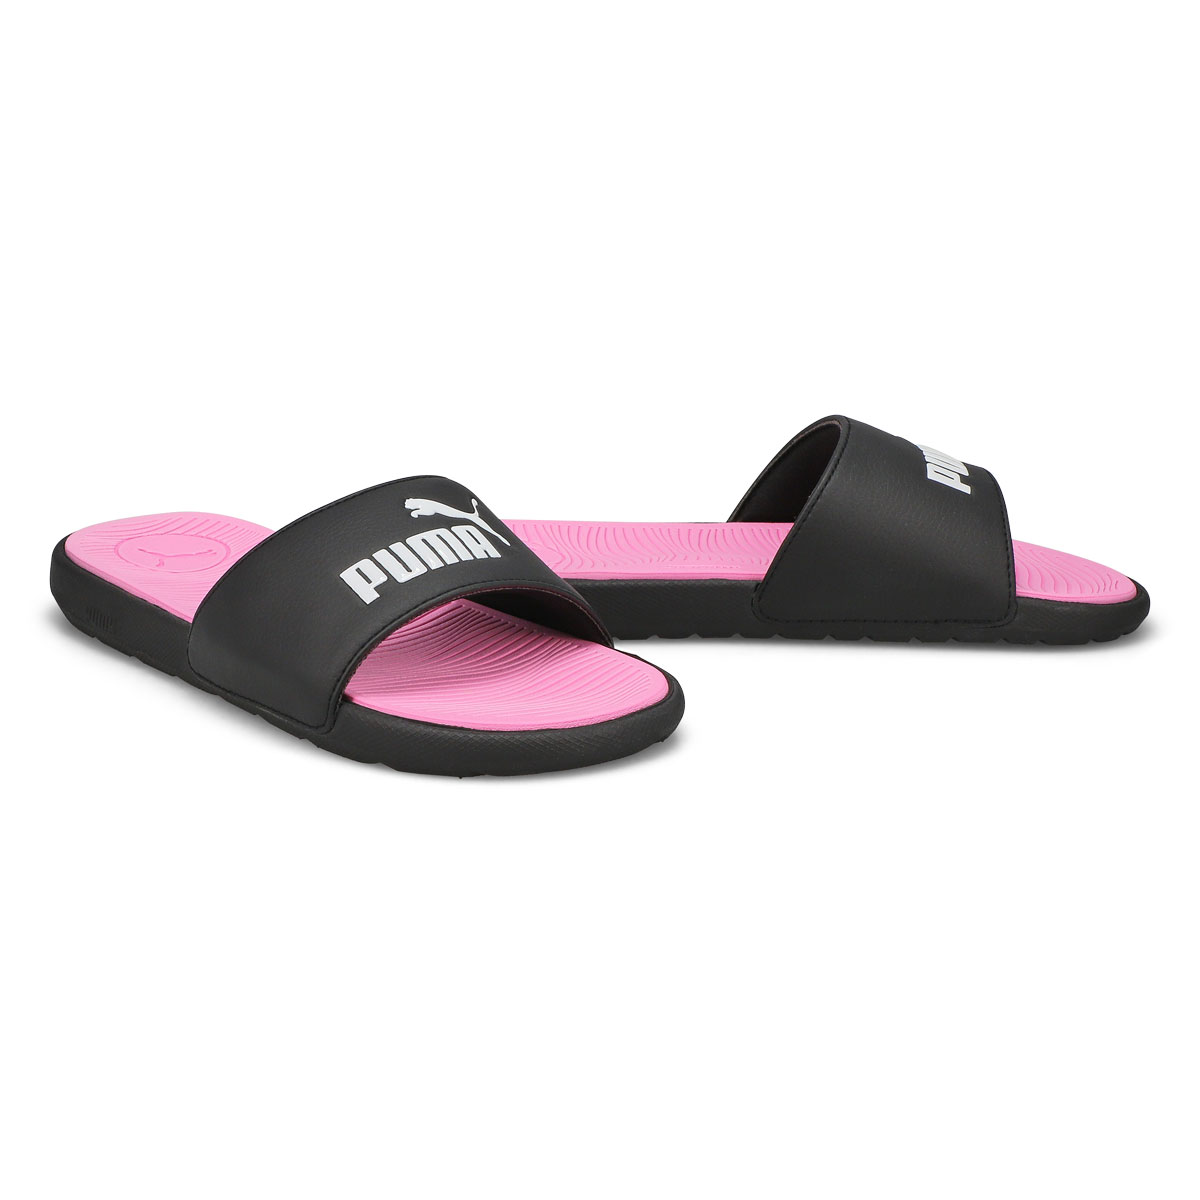 Women's Cool Cat 2.0 BX Slide Sandal - Black/White/Pink